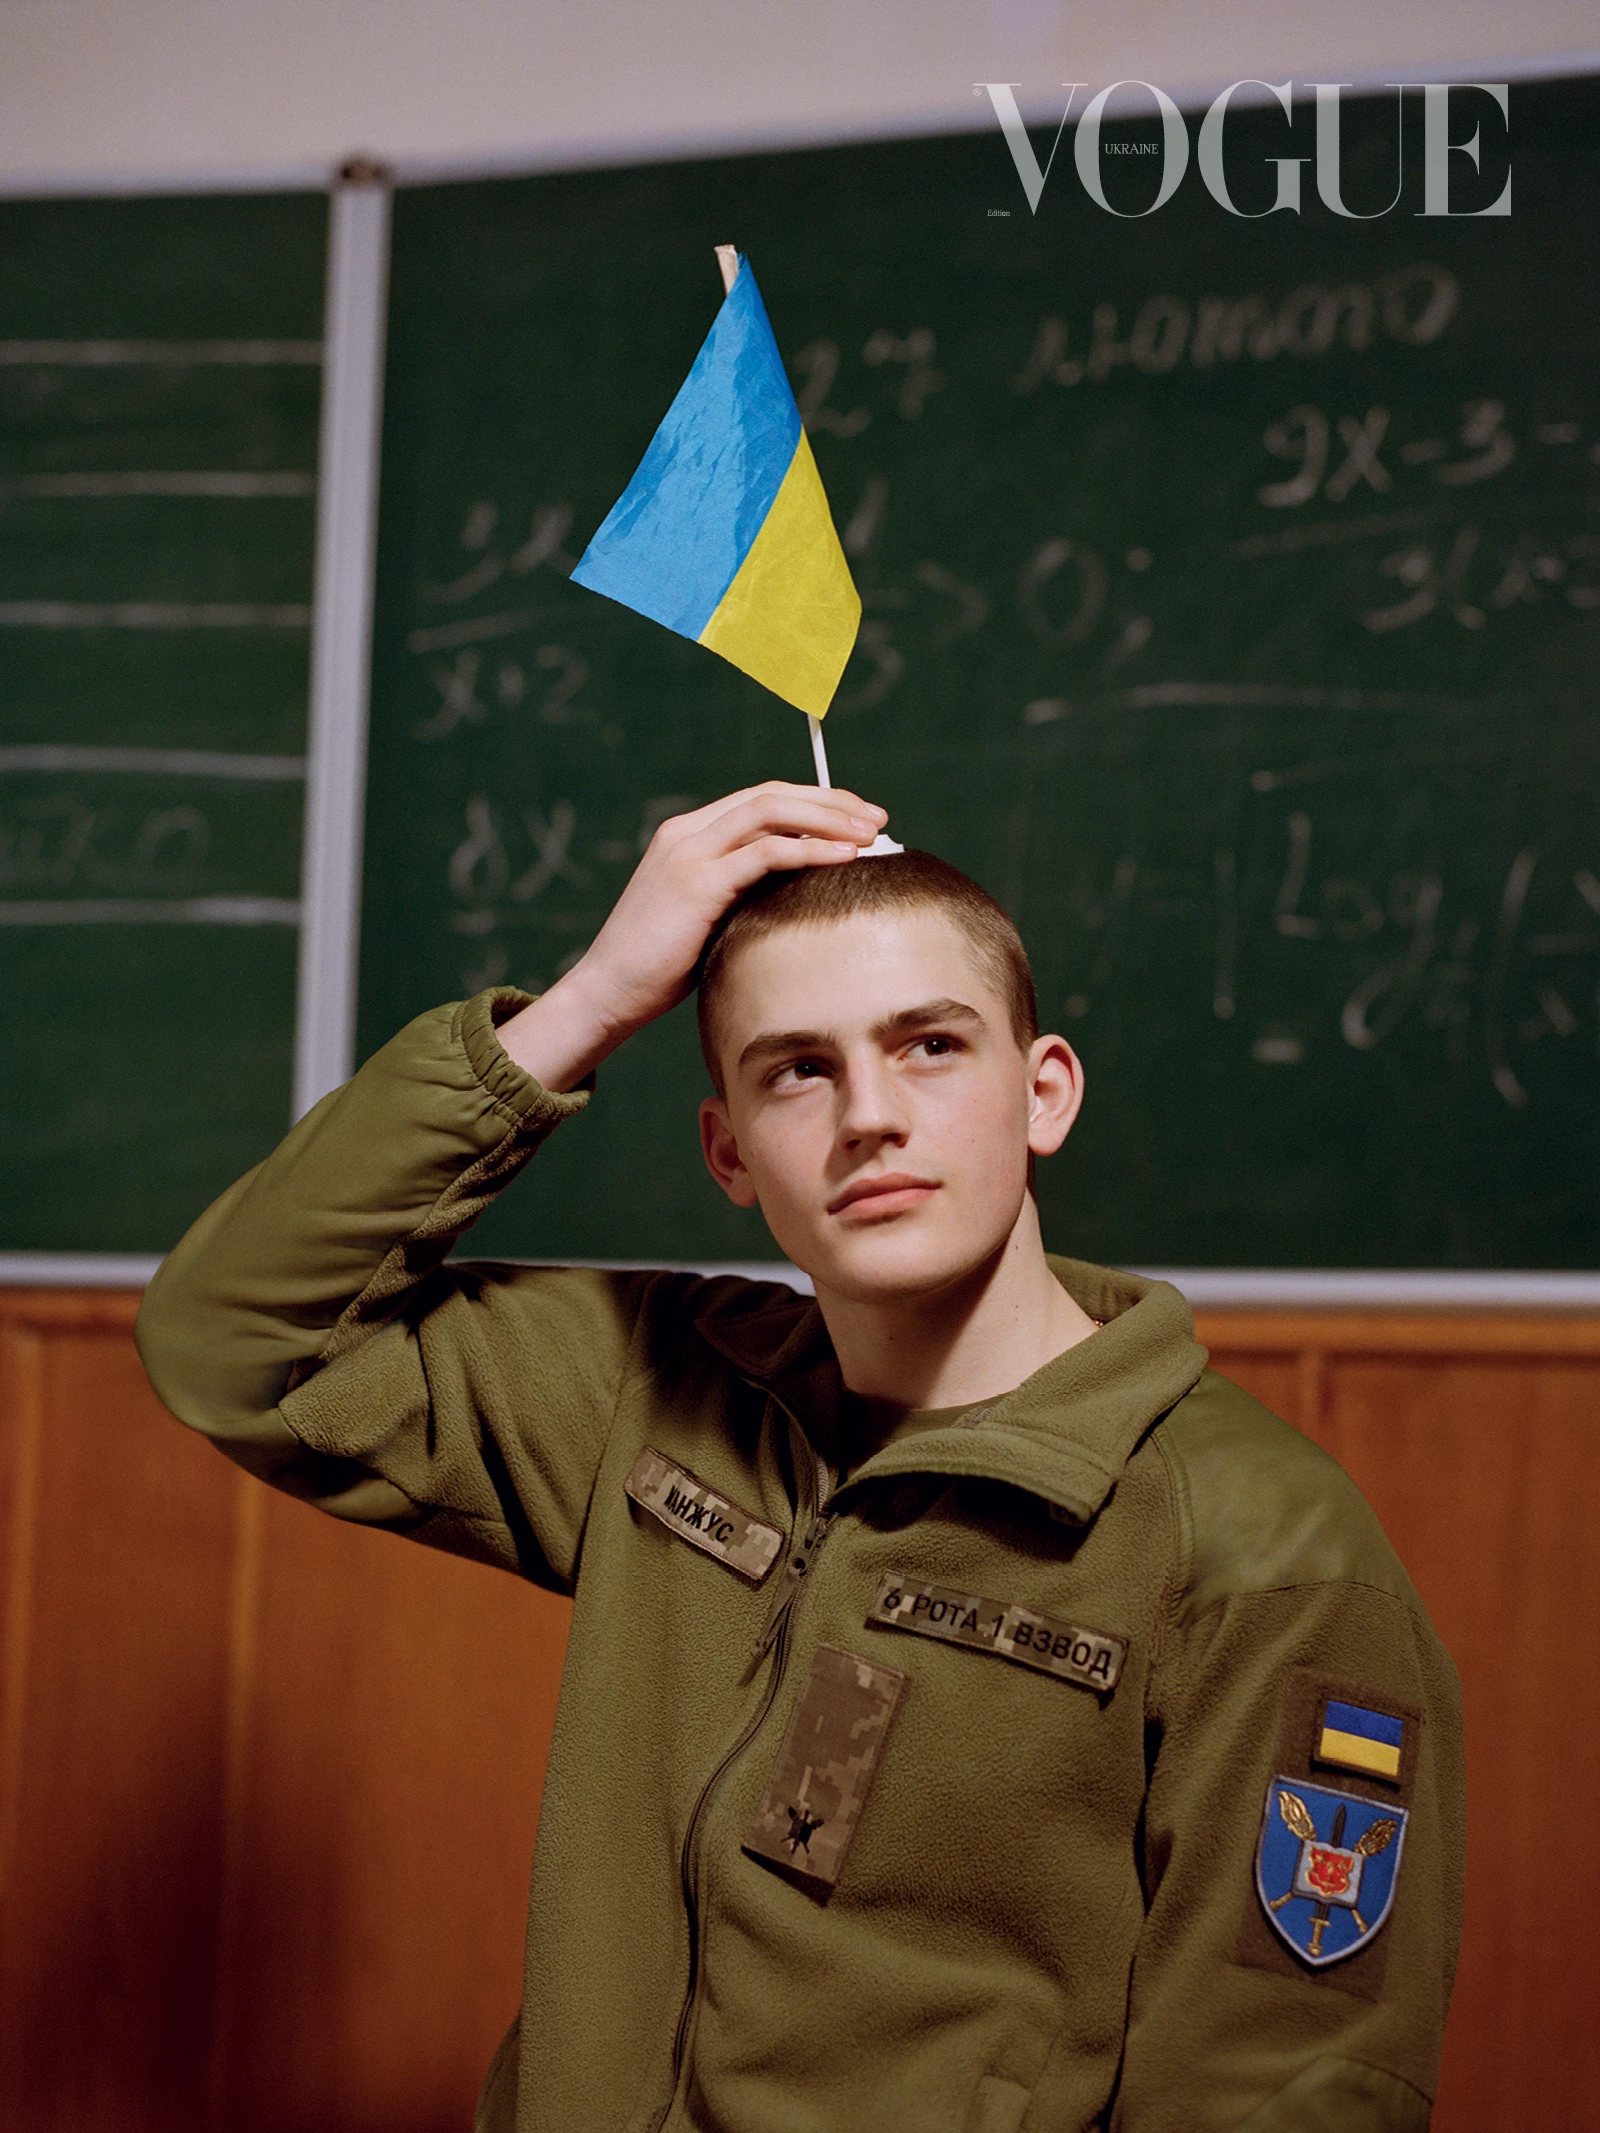 Курсант Військового ліцею імені Івана Богуна. Фото: Бретт Ллойд, Vogue, Україна 